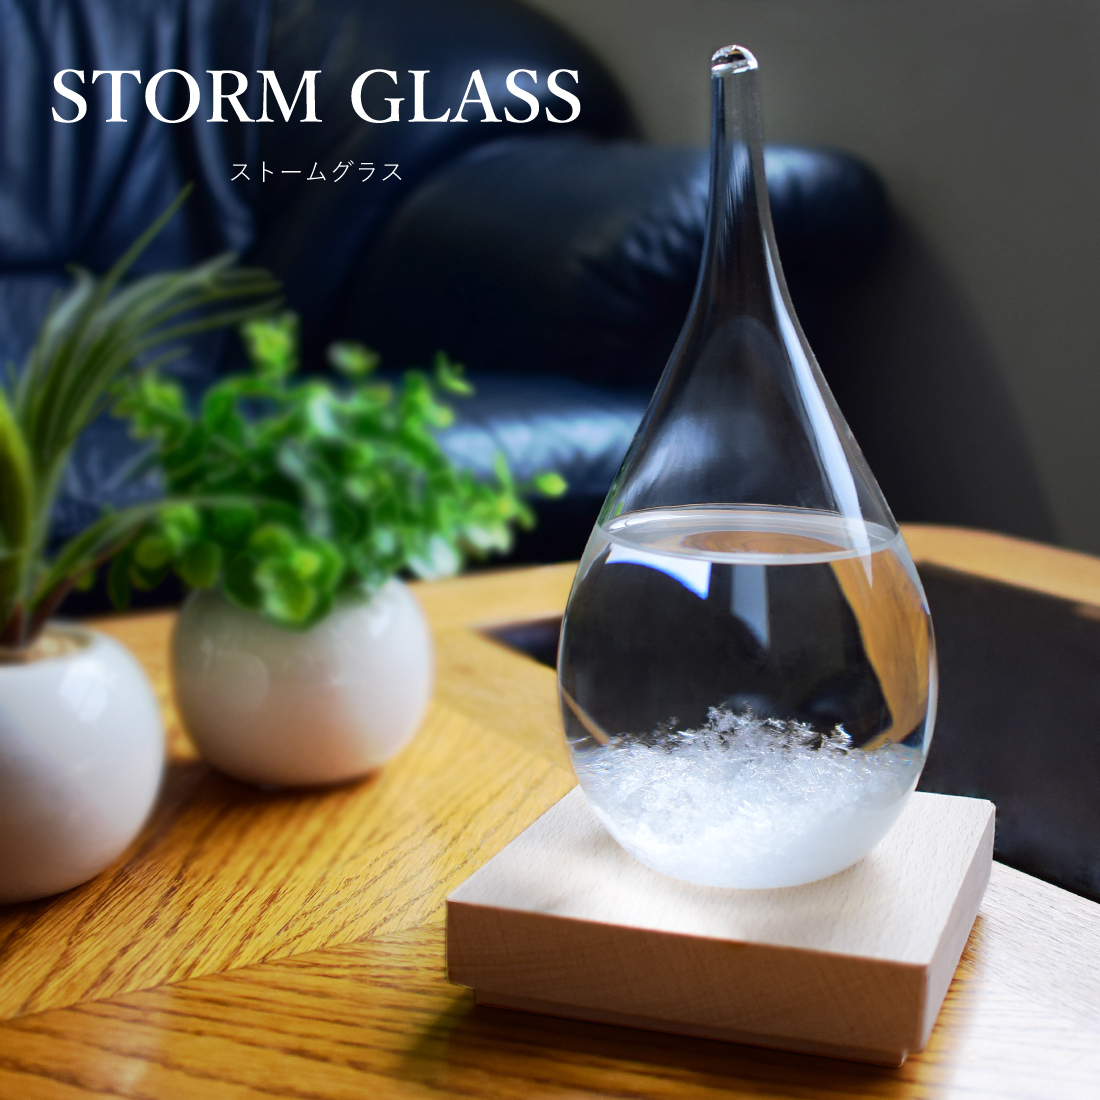 ストームグラス ガラス天気予報ボトル ストーム瓶 Large 気象予報 結晶観察器 しずく型 水滴状 インテリア 雑貨 置物 オブジェ 飾り  :WYY124ii:日本電化パーツ 通販 